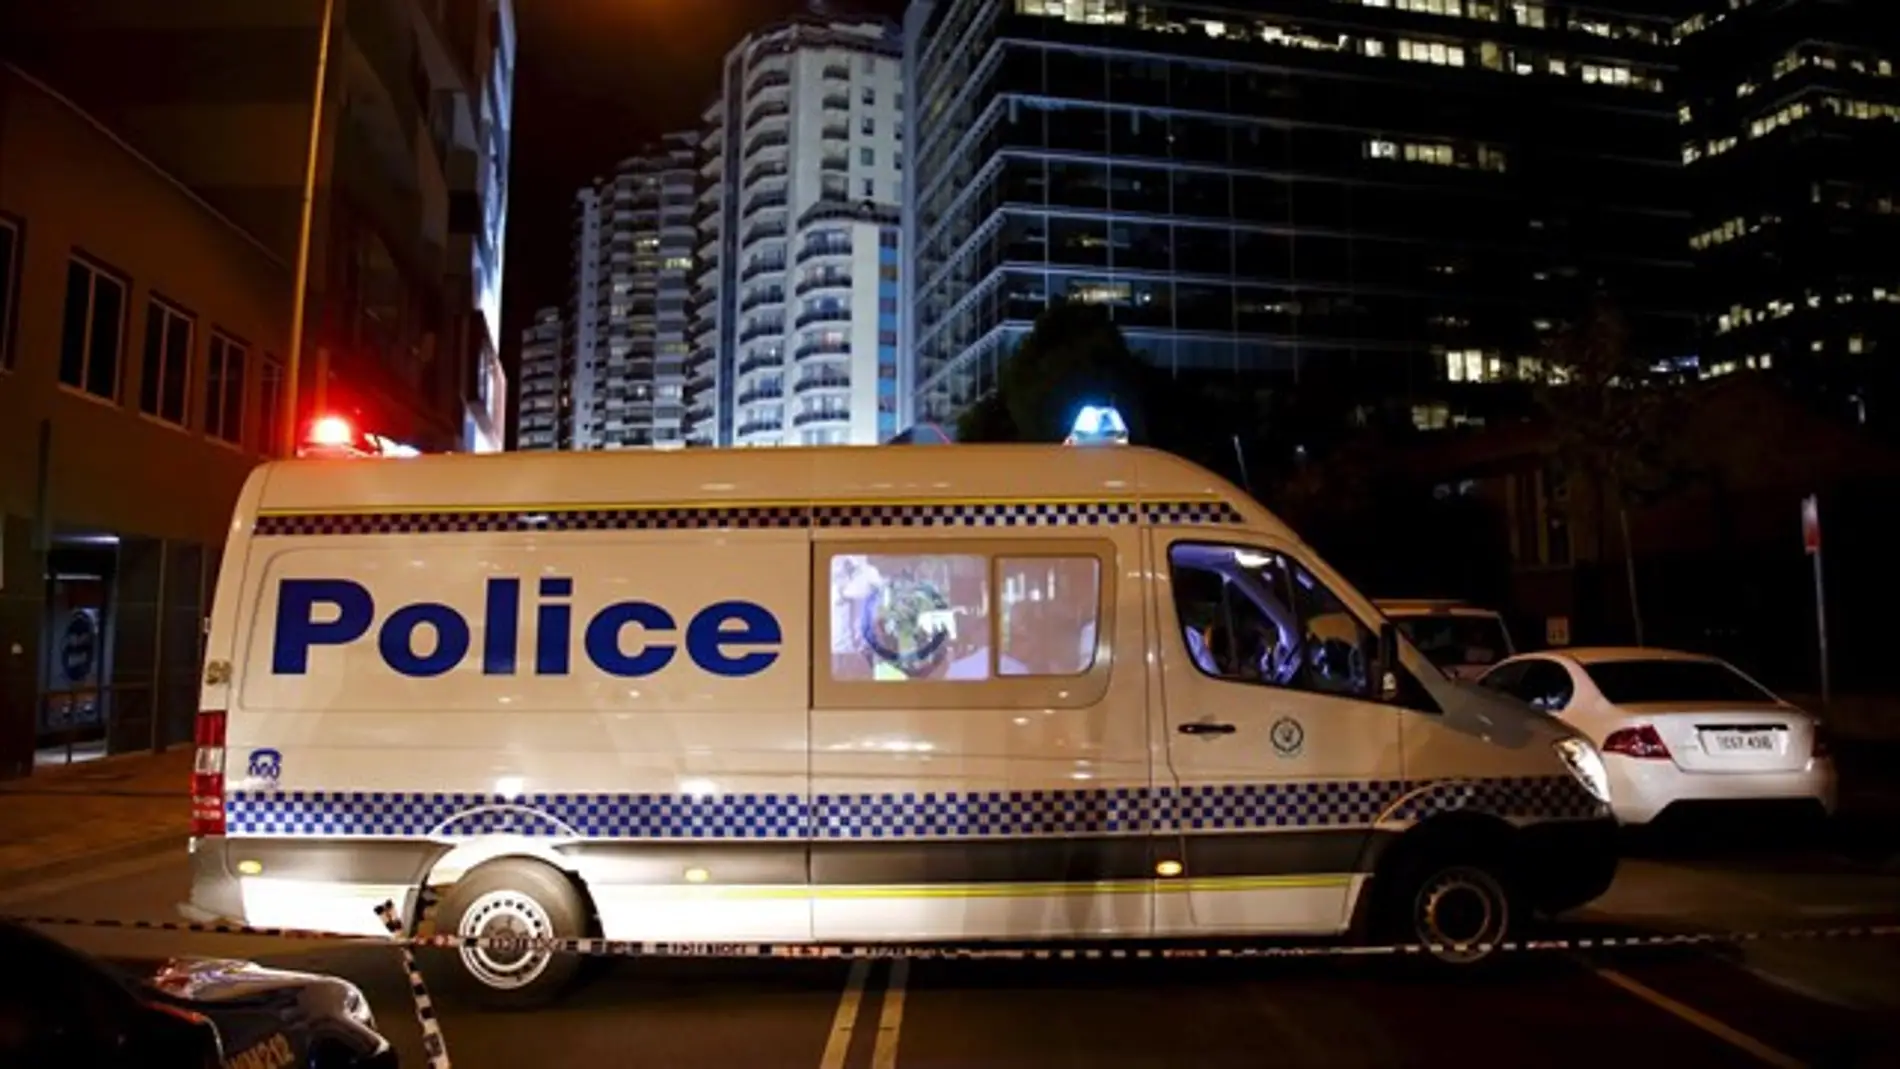 Vehículo de la Policía de Australia